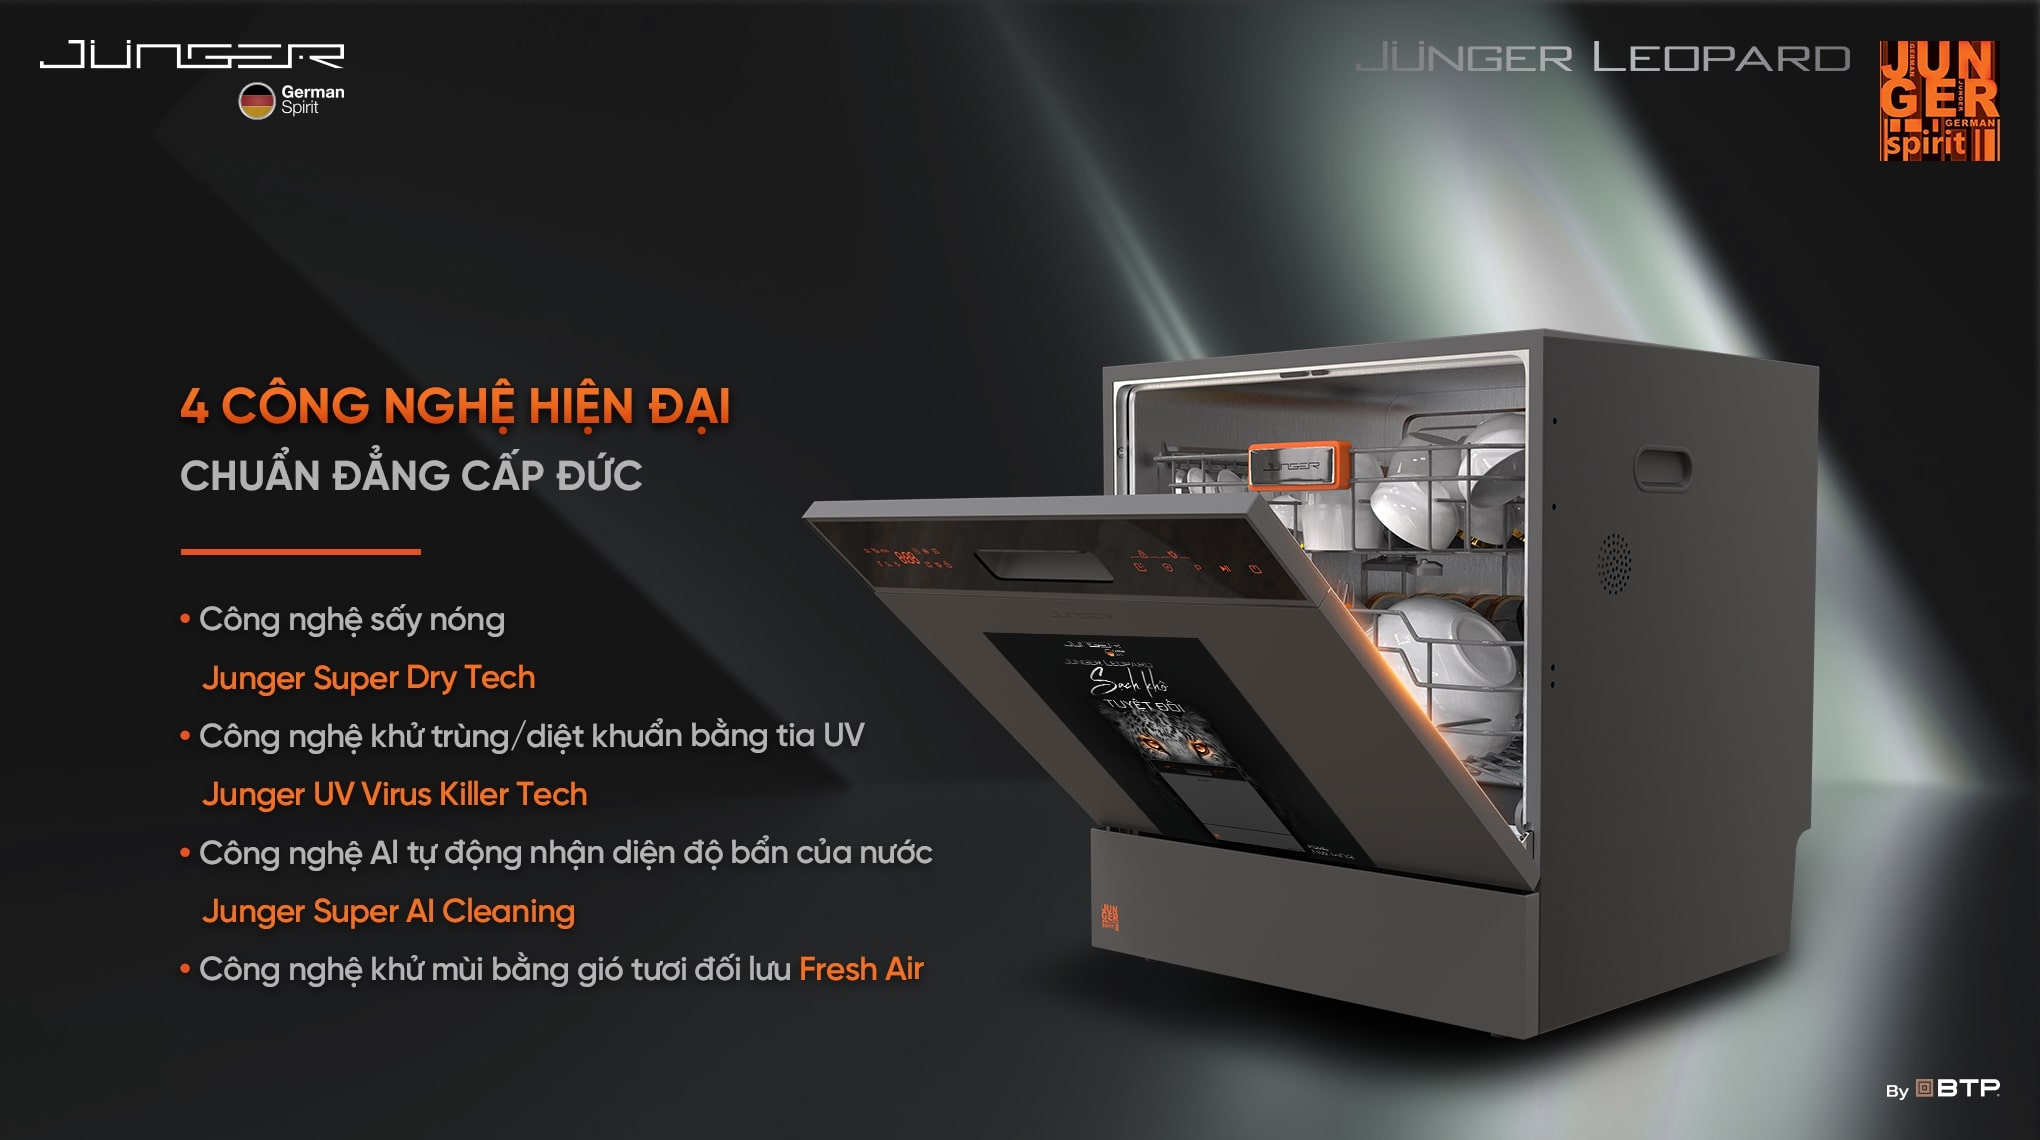 Máy rửa bát Junger Leopard DWJ-100 được ứng dụng 4 công nghệ hiện đại bậc nhất mang lại hiệu quả rửa bát “Sạch khô sáng bóng